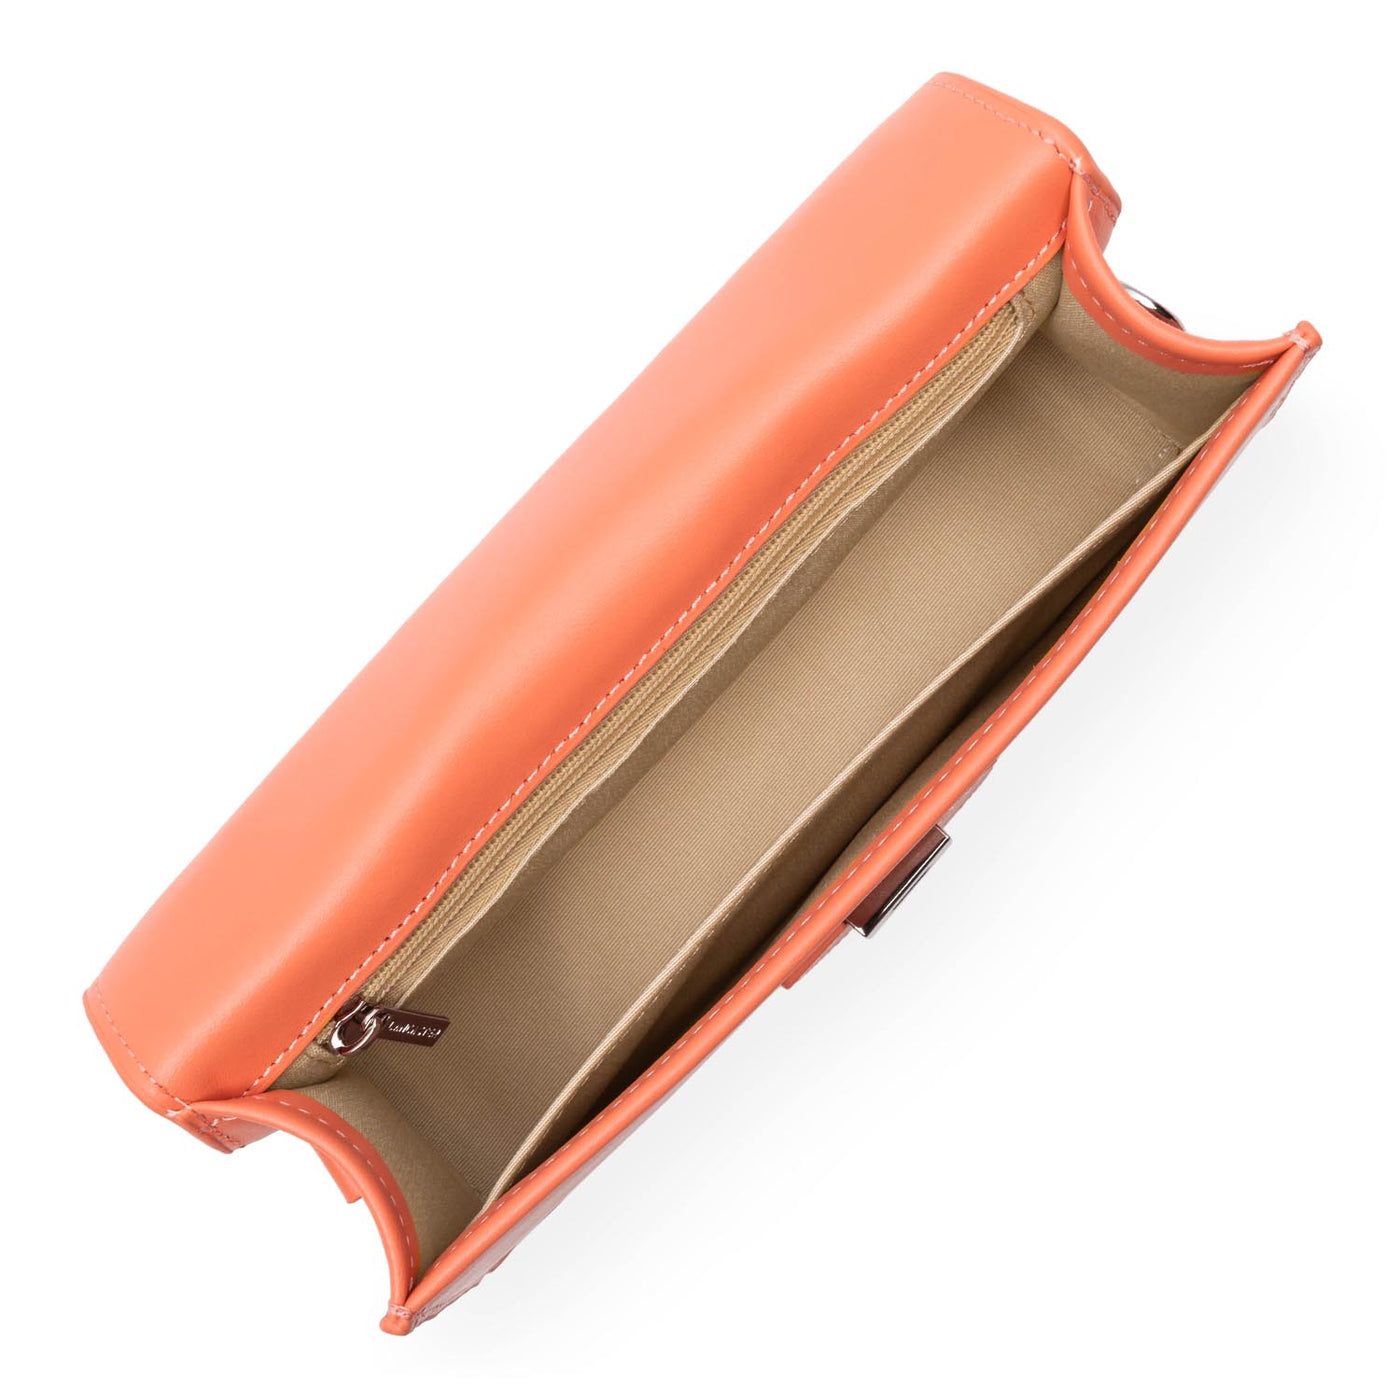 m baguette bag - paris ily #couleur_abricot